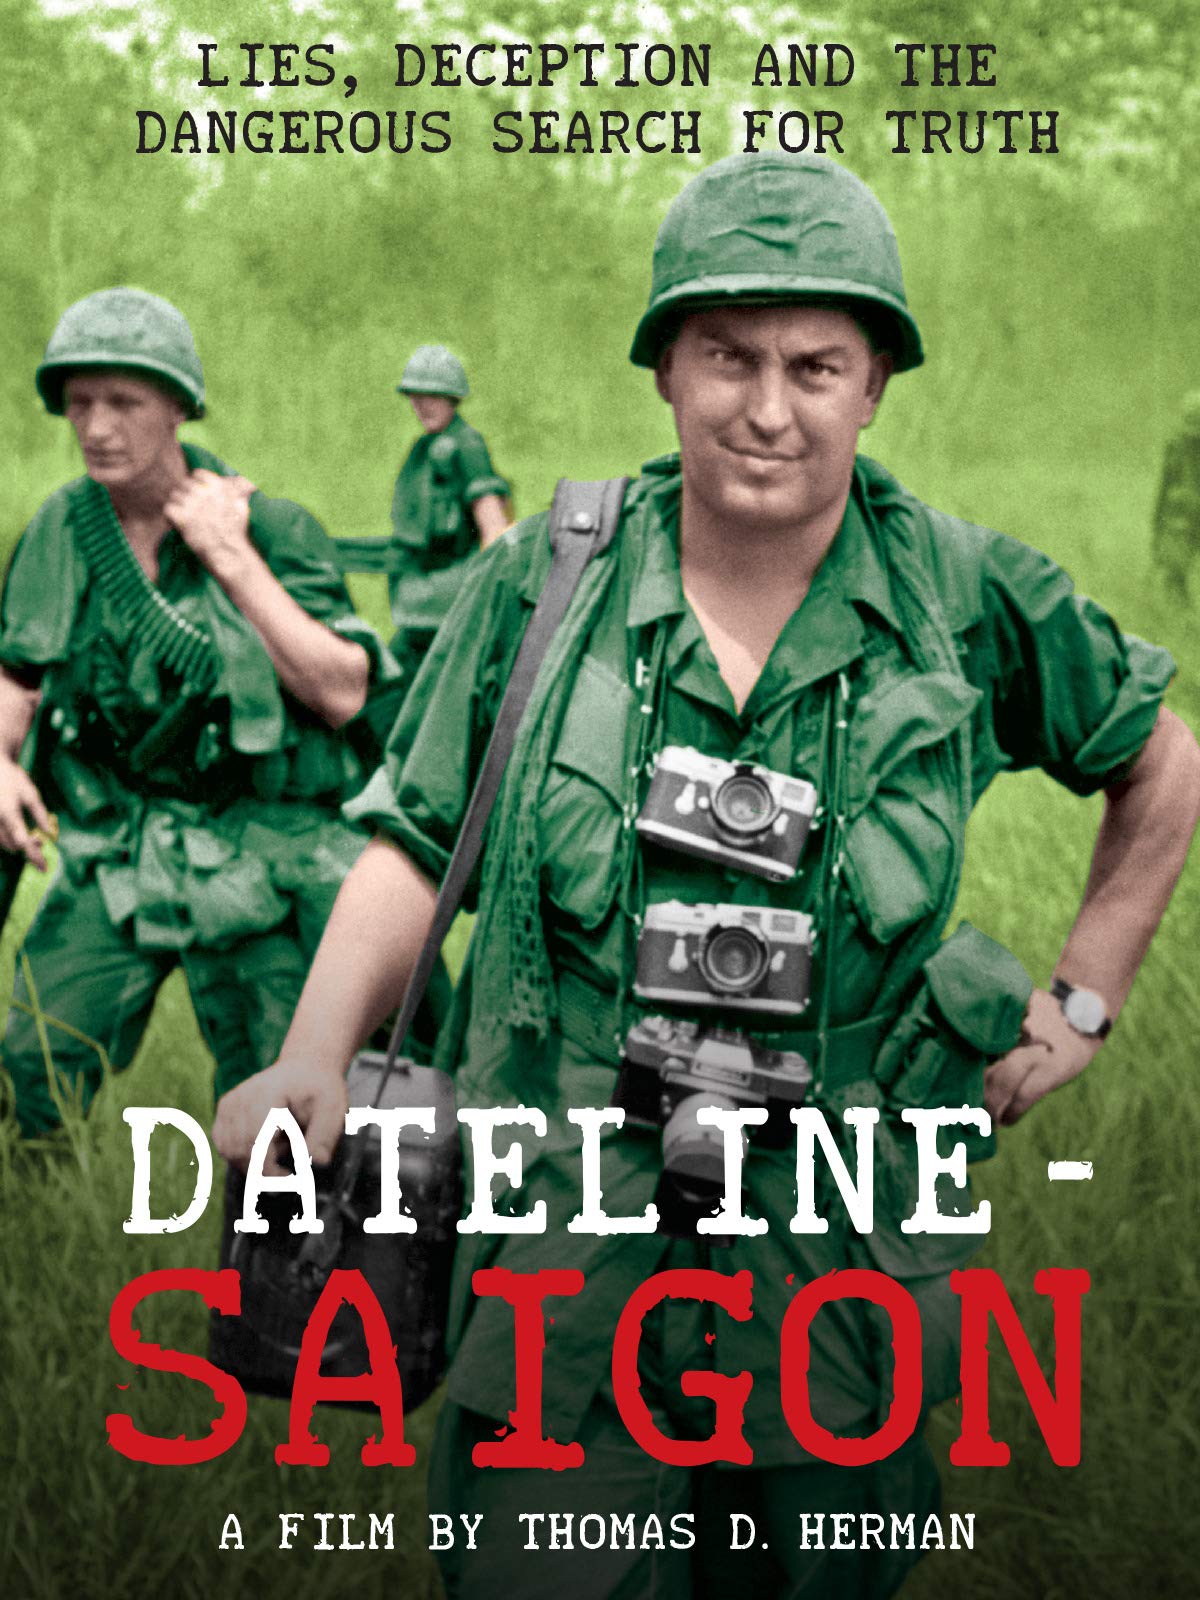 Dateline—Saigon